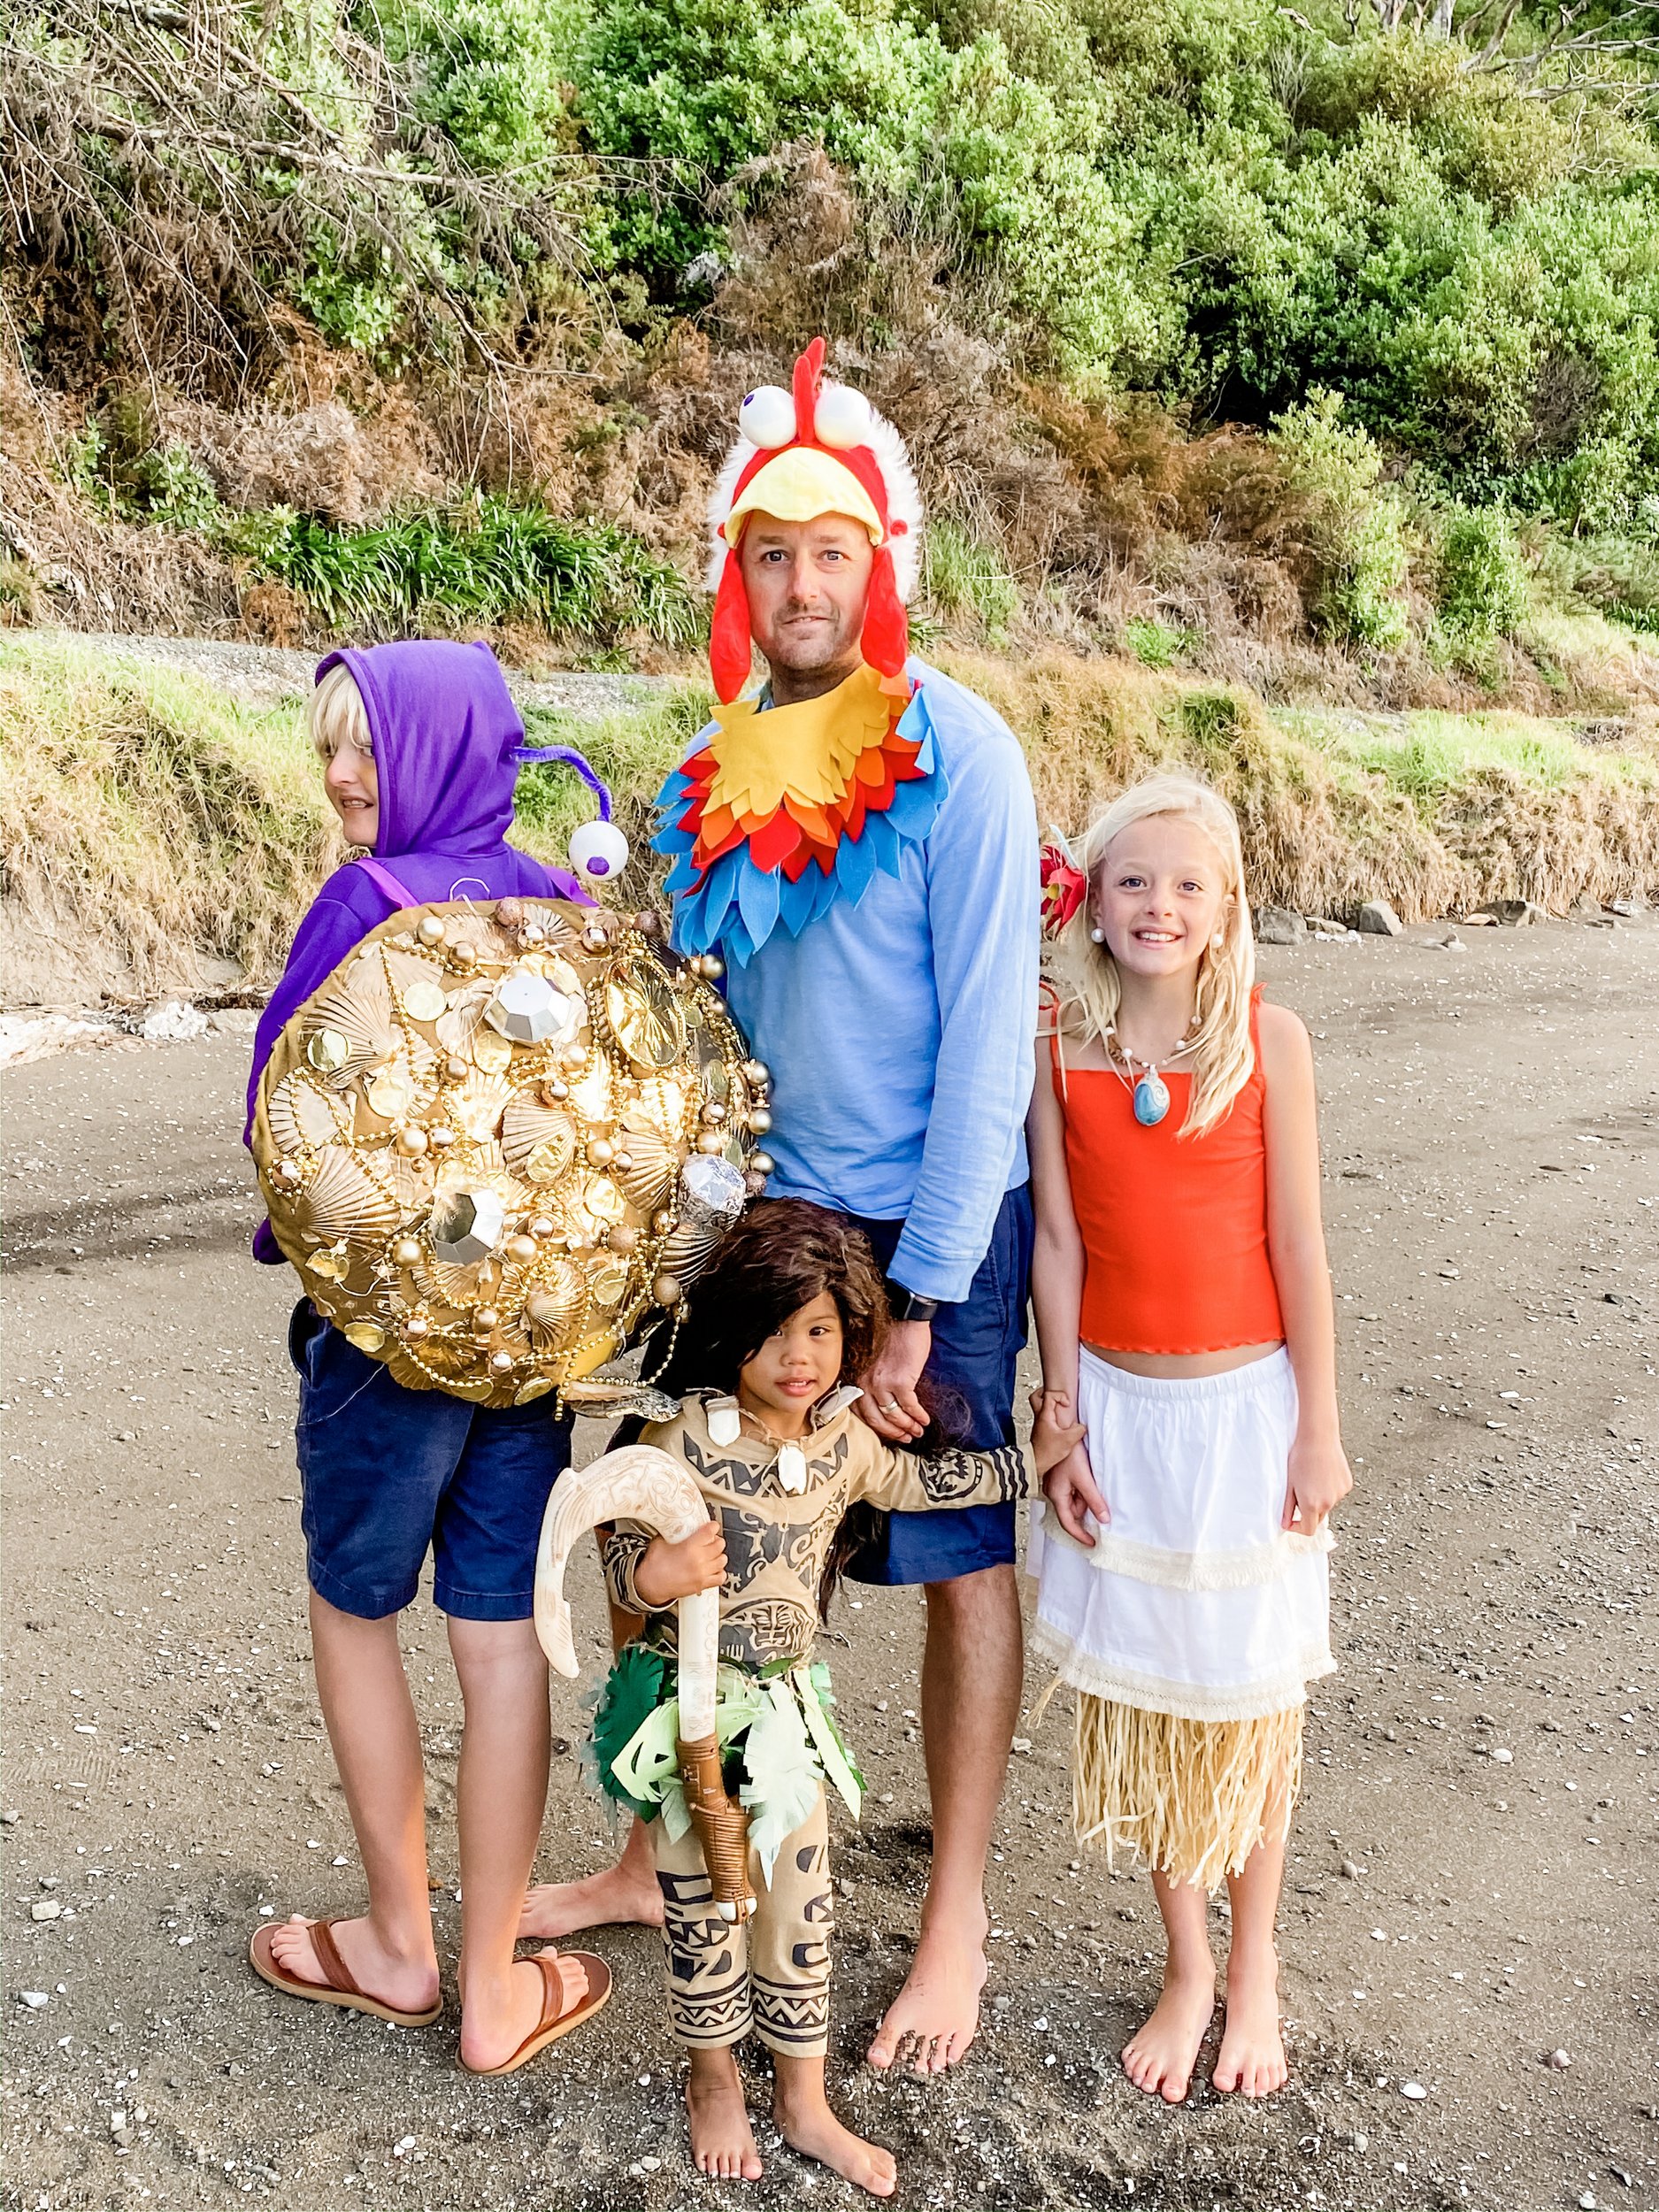 DIY moana costumes- tamatoa the shiny crab